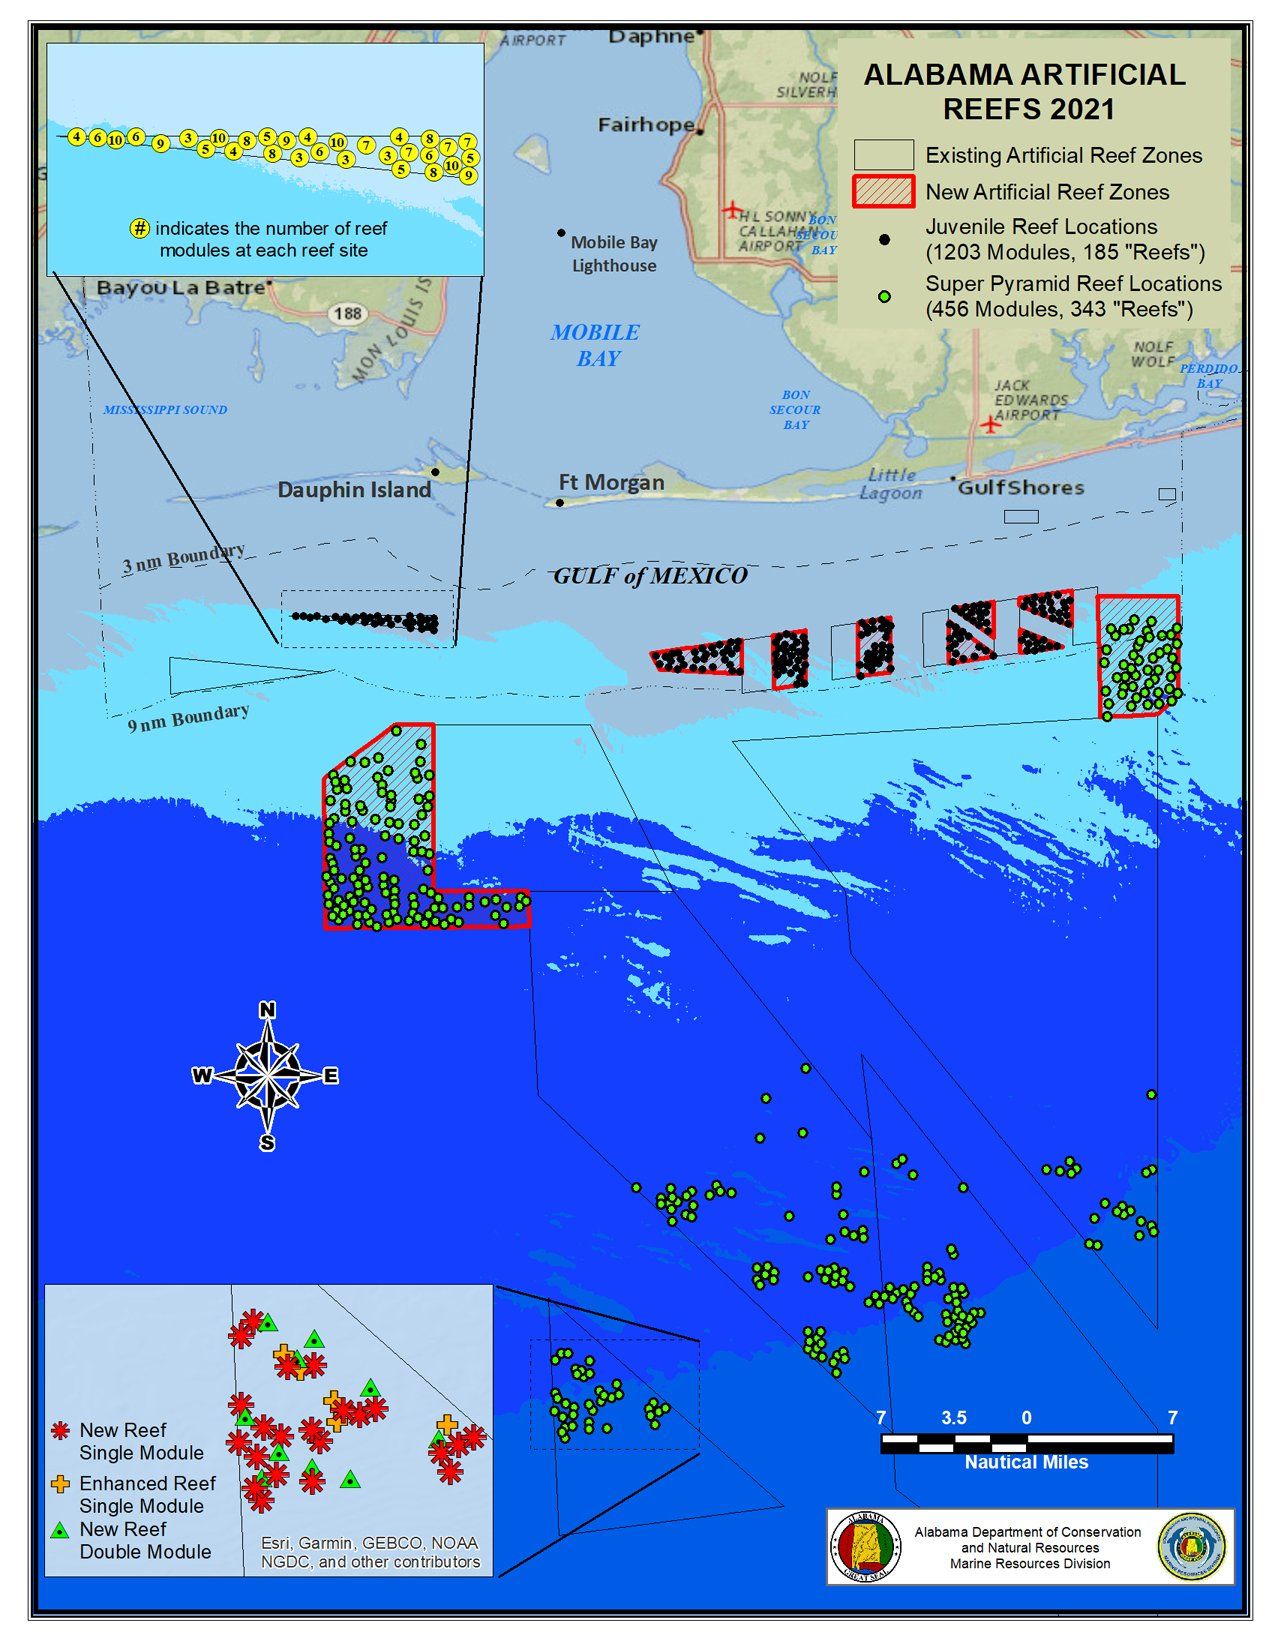 Alabama Artificial Reef Map 2021